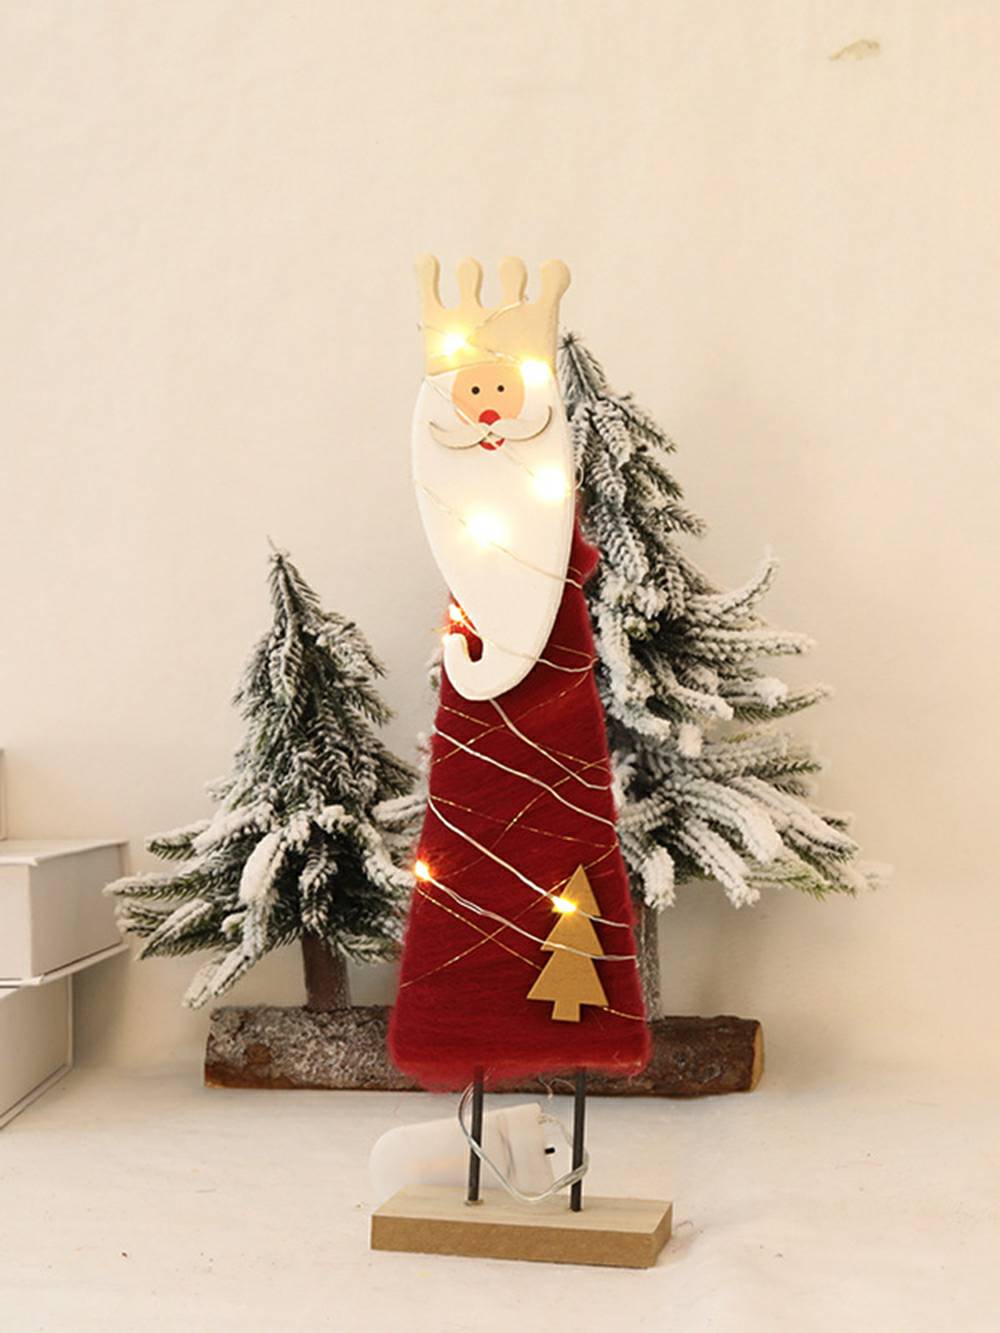 Cute felt elk Santa Claus ornament with lights